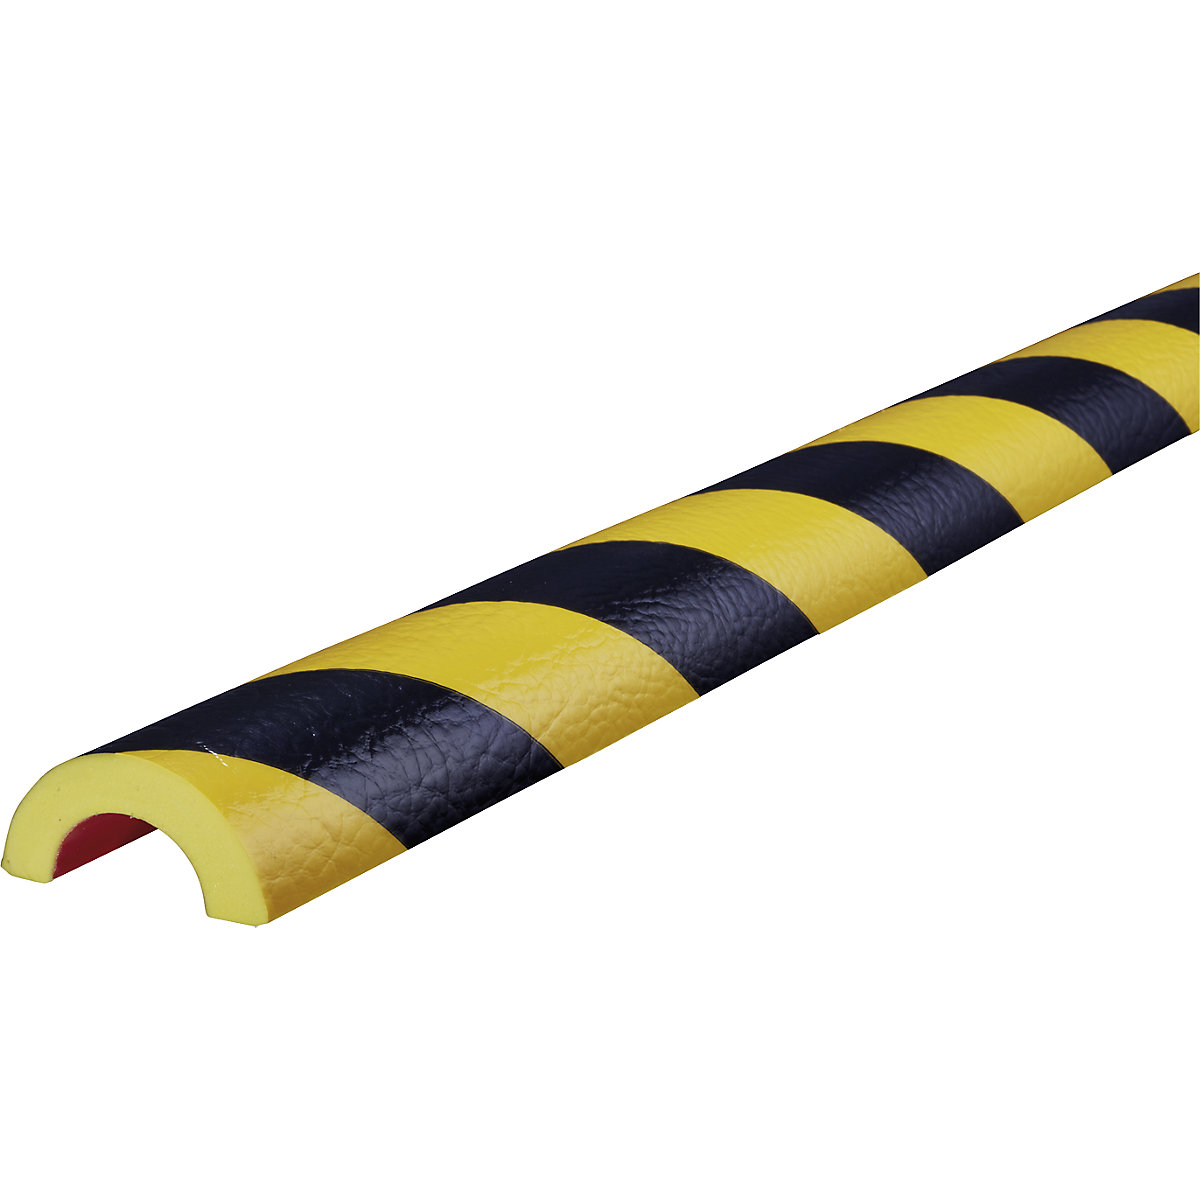 Protection des tuyaux Knuffi® – SHG, type R30, 1 rouleau de 5 m, noir / jaune